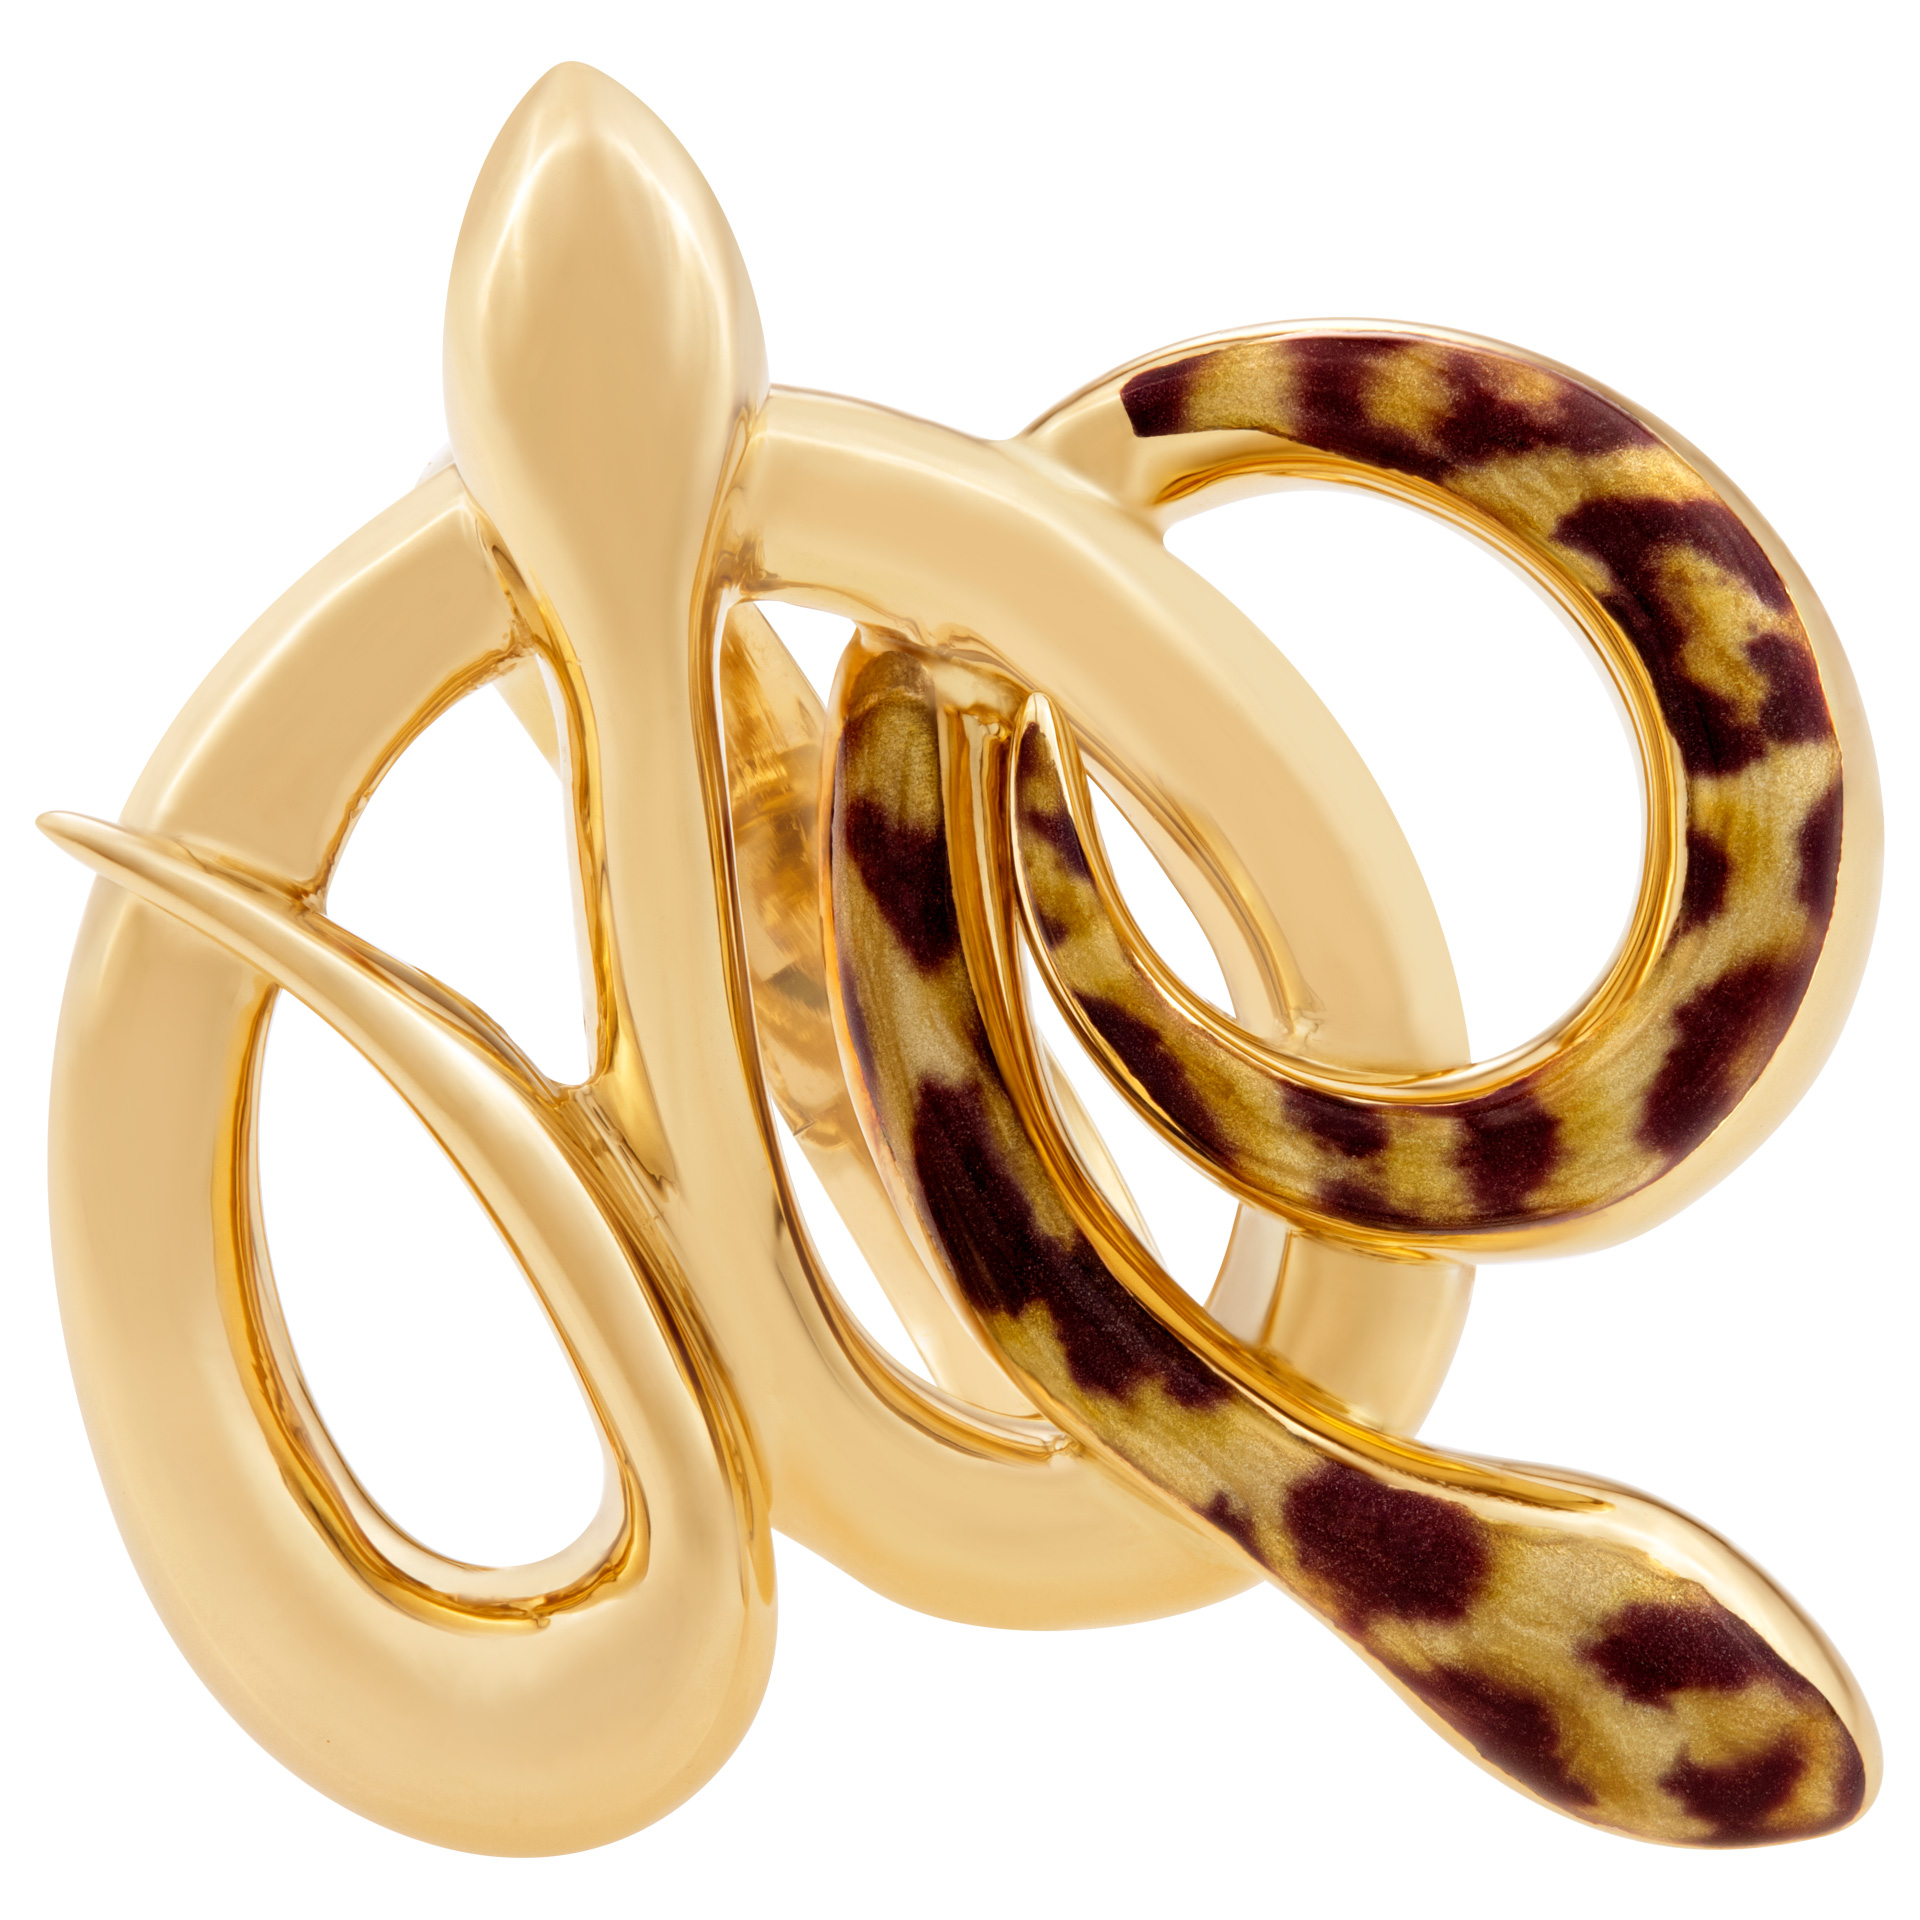 Stylish snake enamel ring in 14k